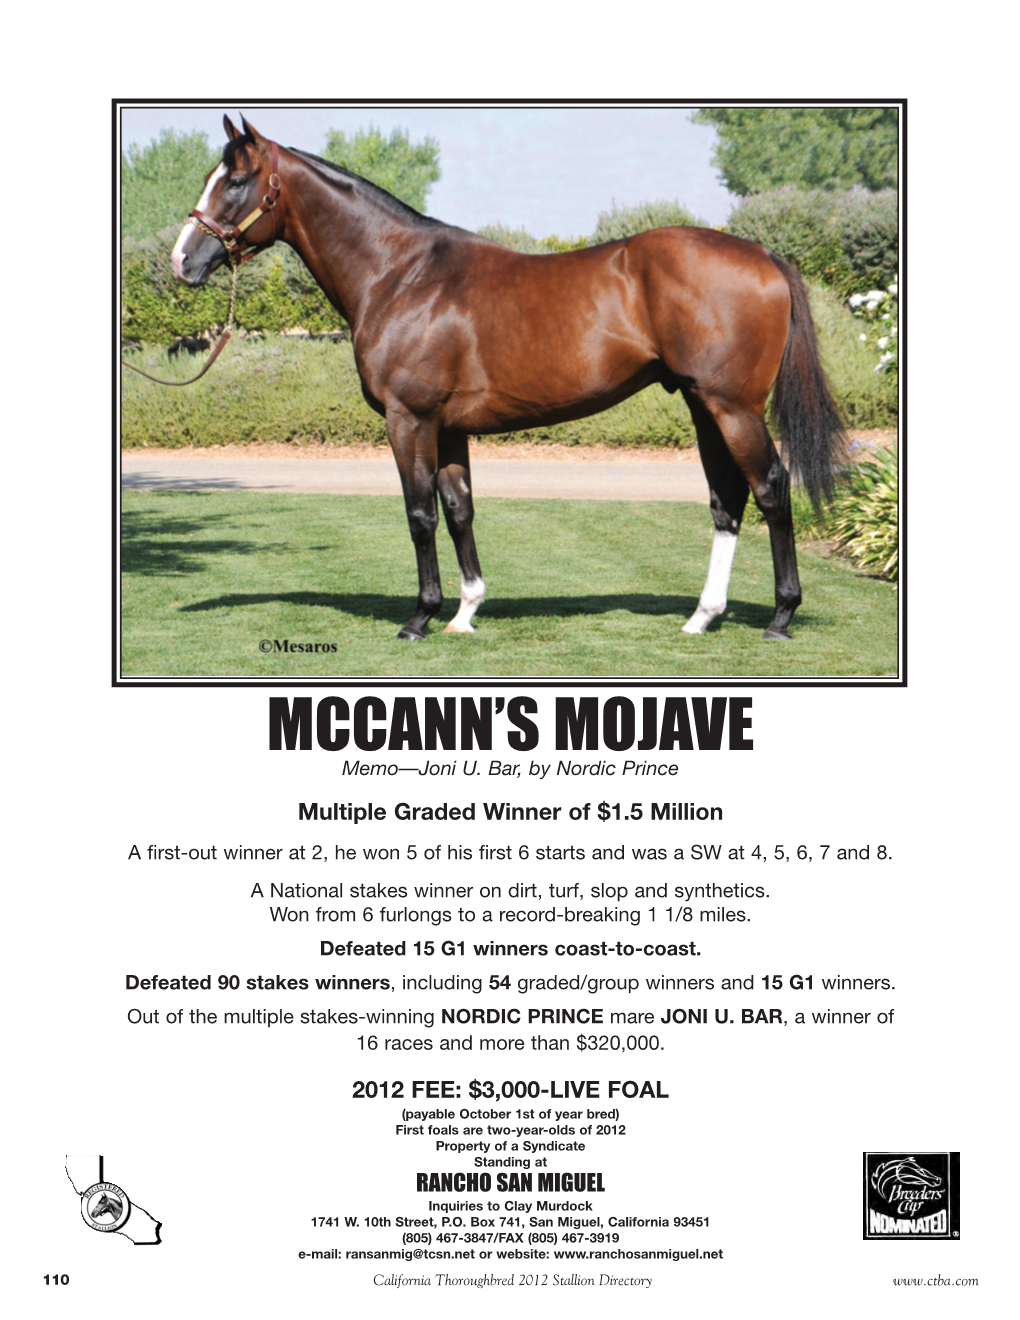 Mccann's Mojave